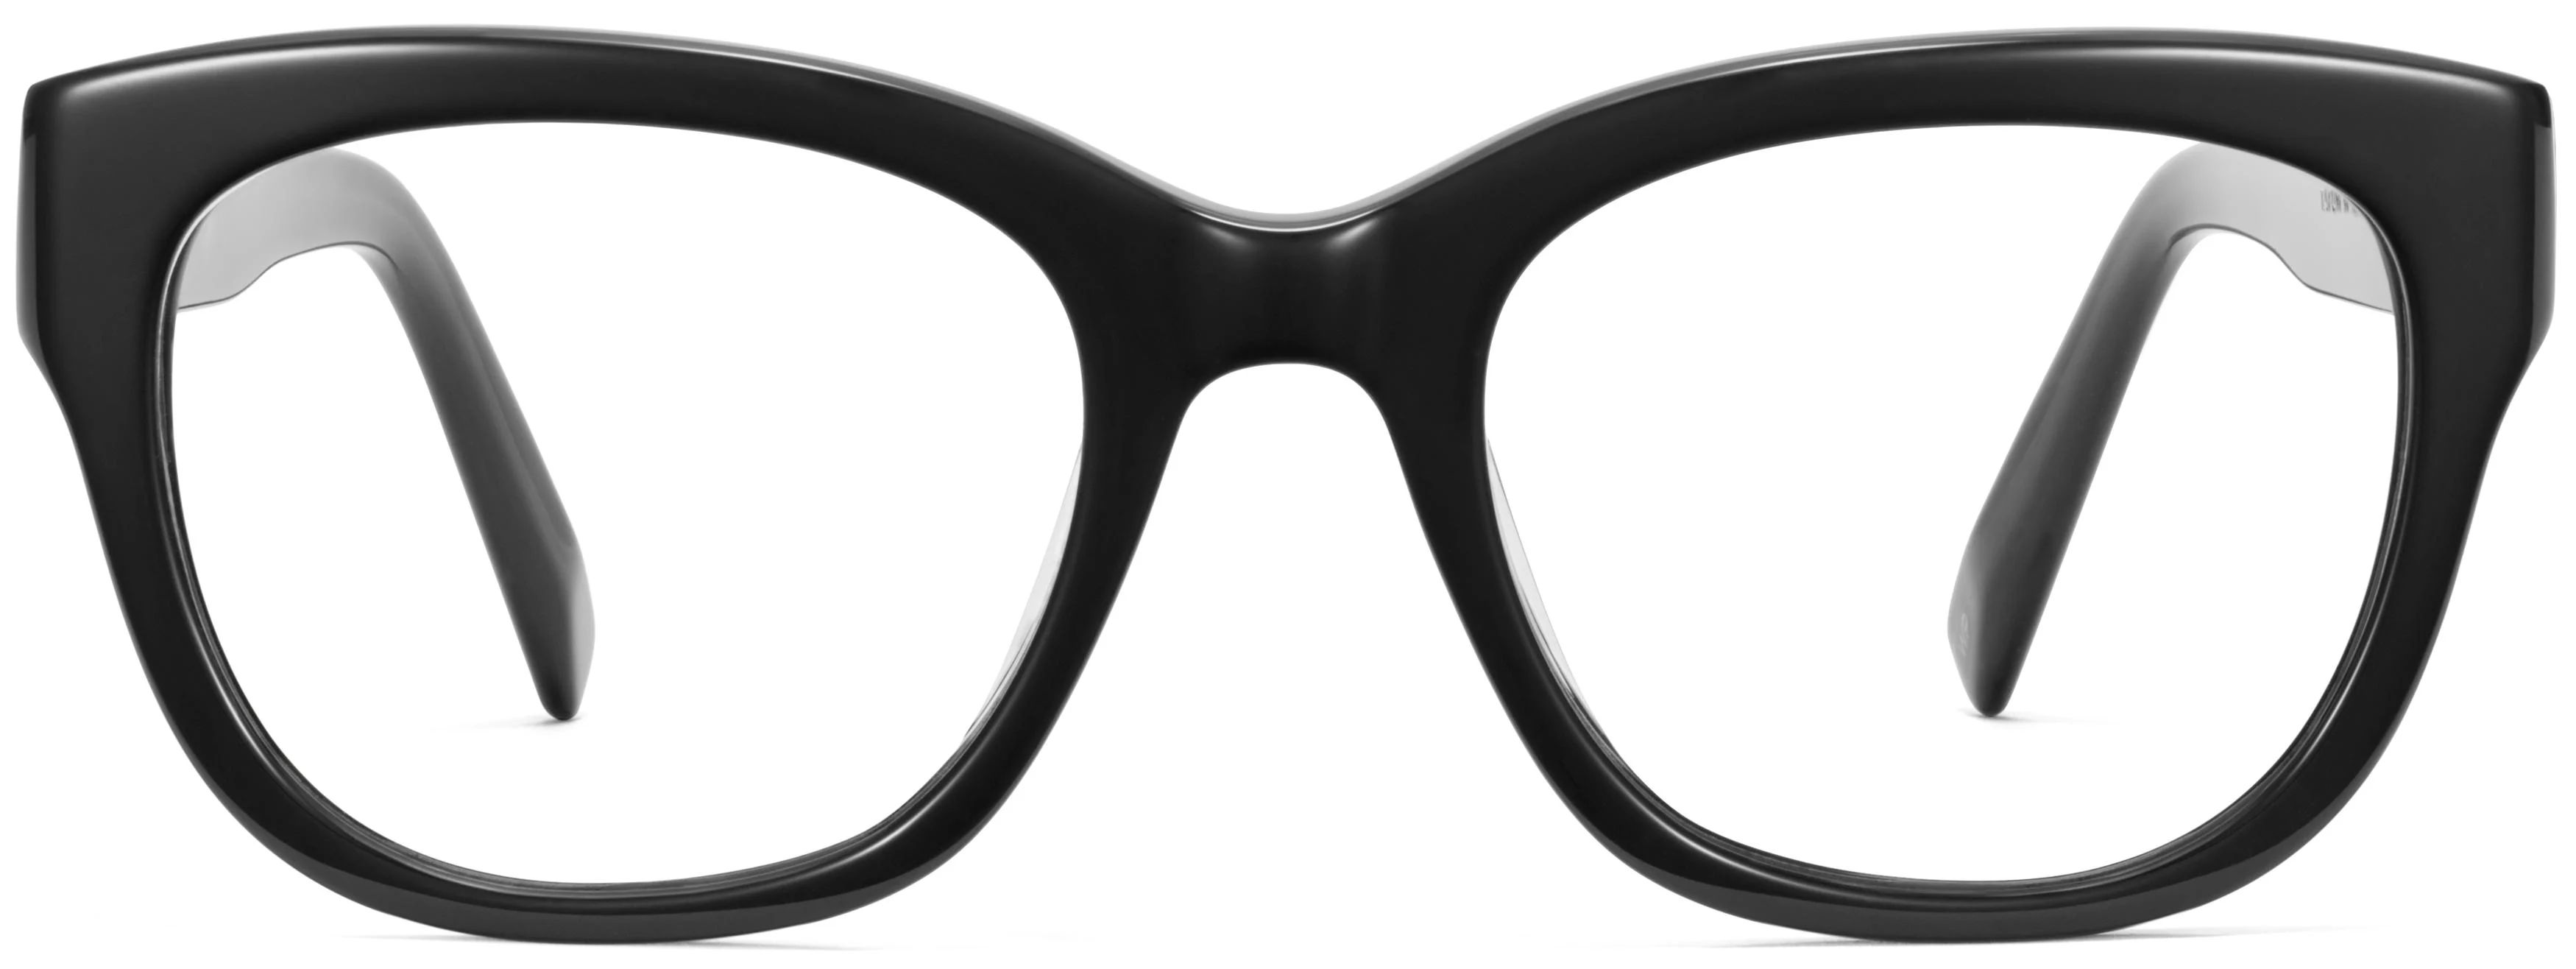 Tatum Eyeglasses in Jet Black | Warby Parker | Warby Parker (US)